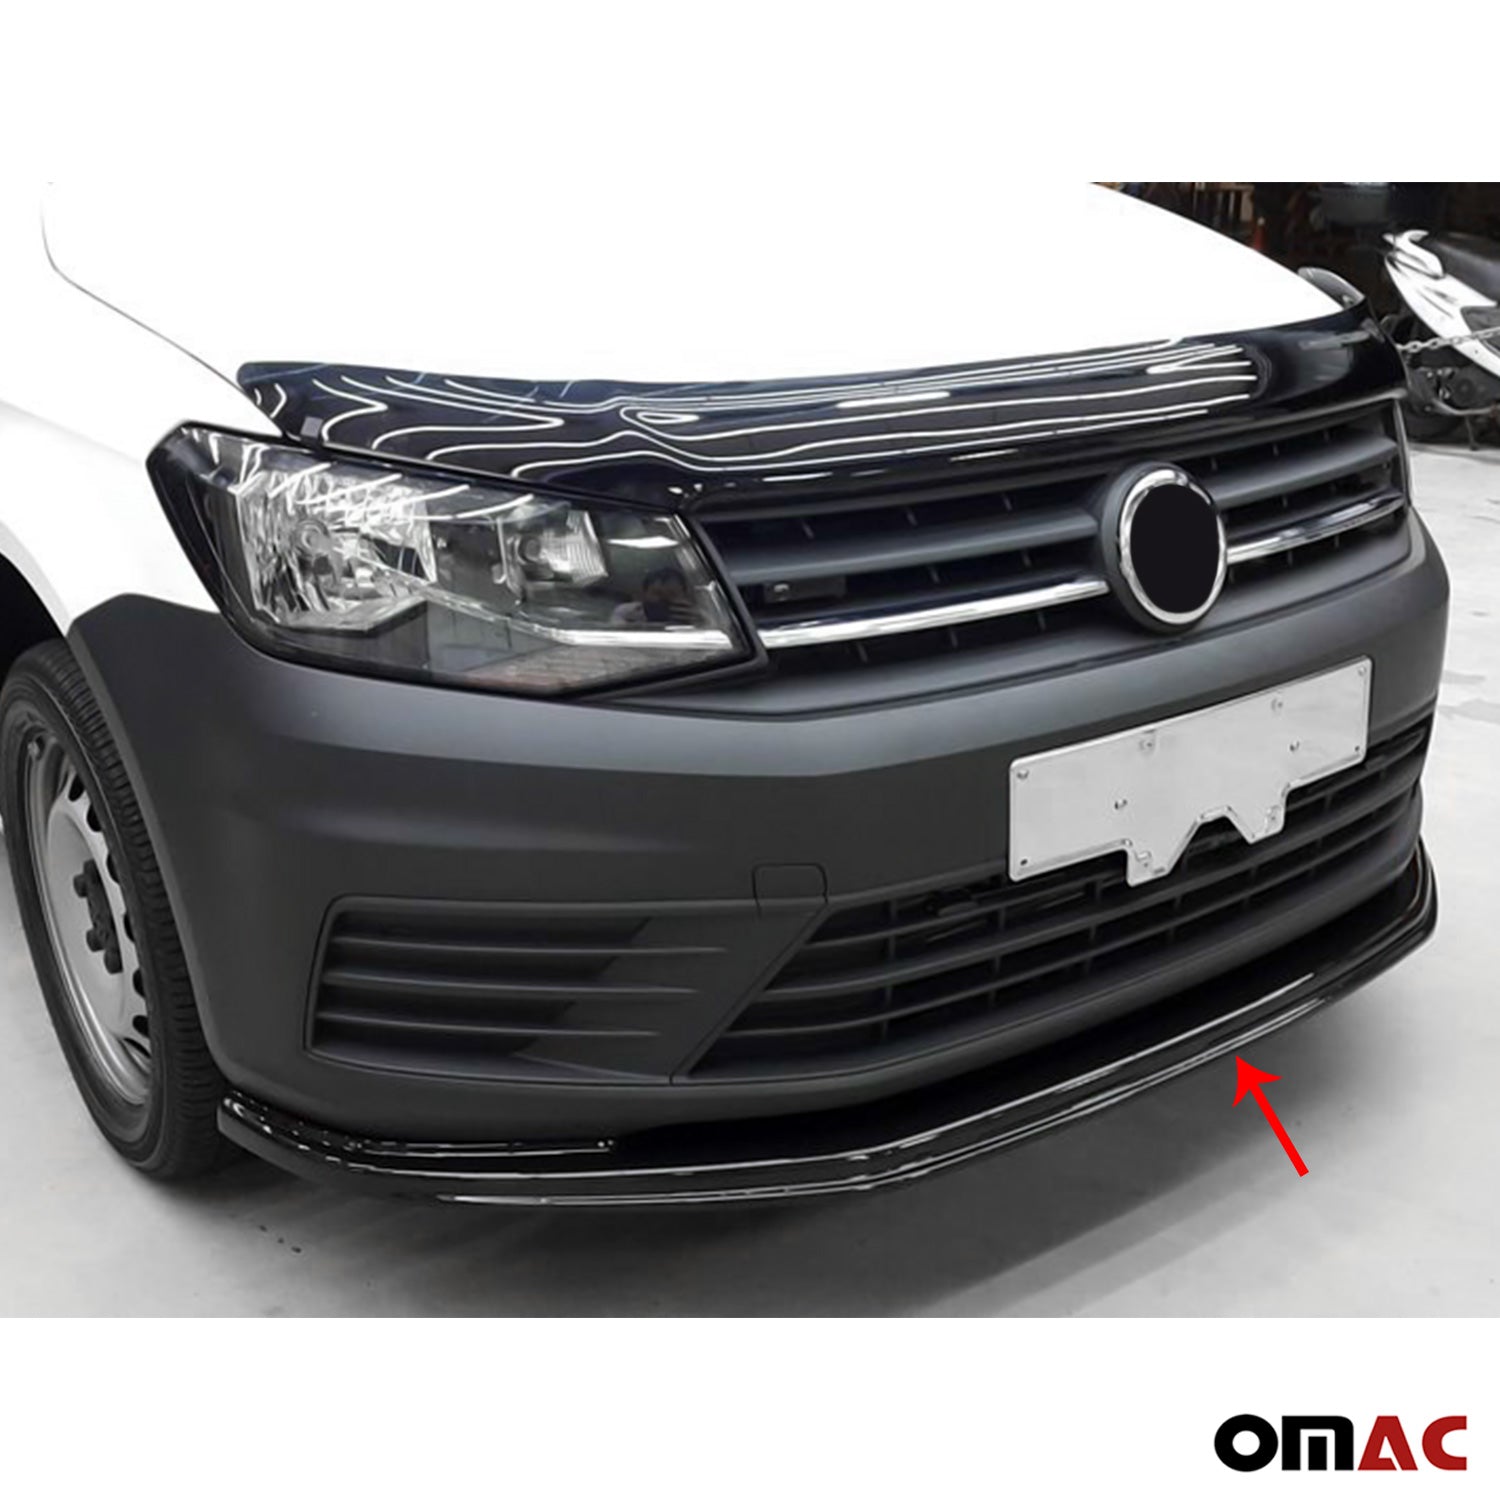 Schutzfolie schwarz für lackierte Stoßfänger VW Caddy 4/3 (ab 2011) -  Baschnagel Webshop